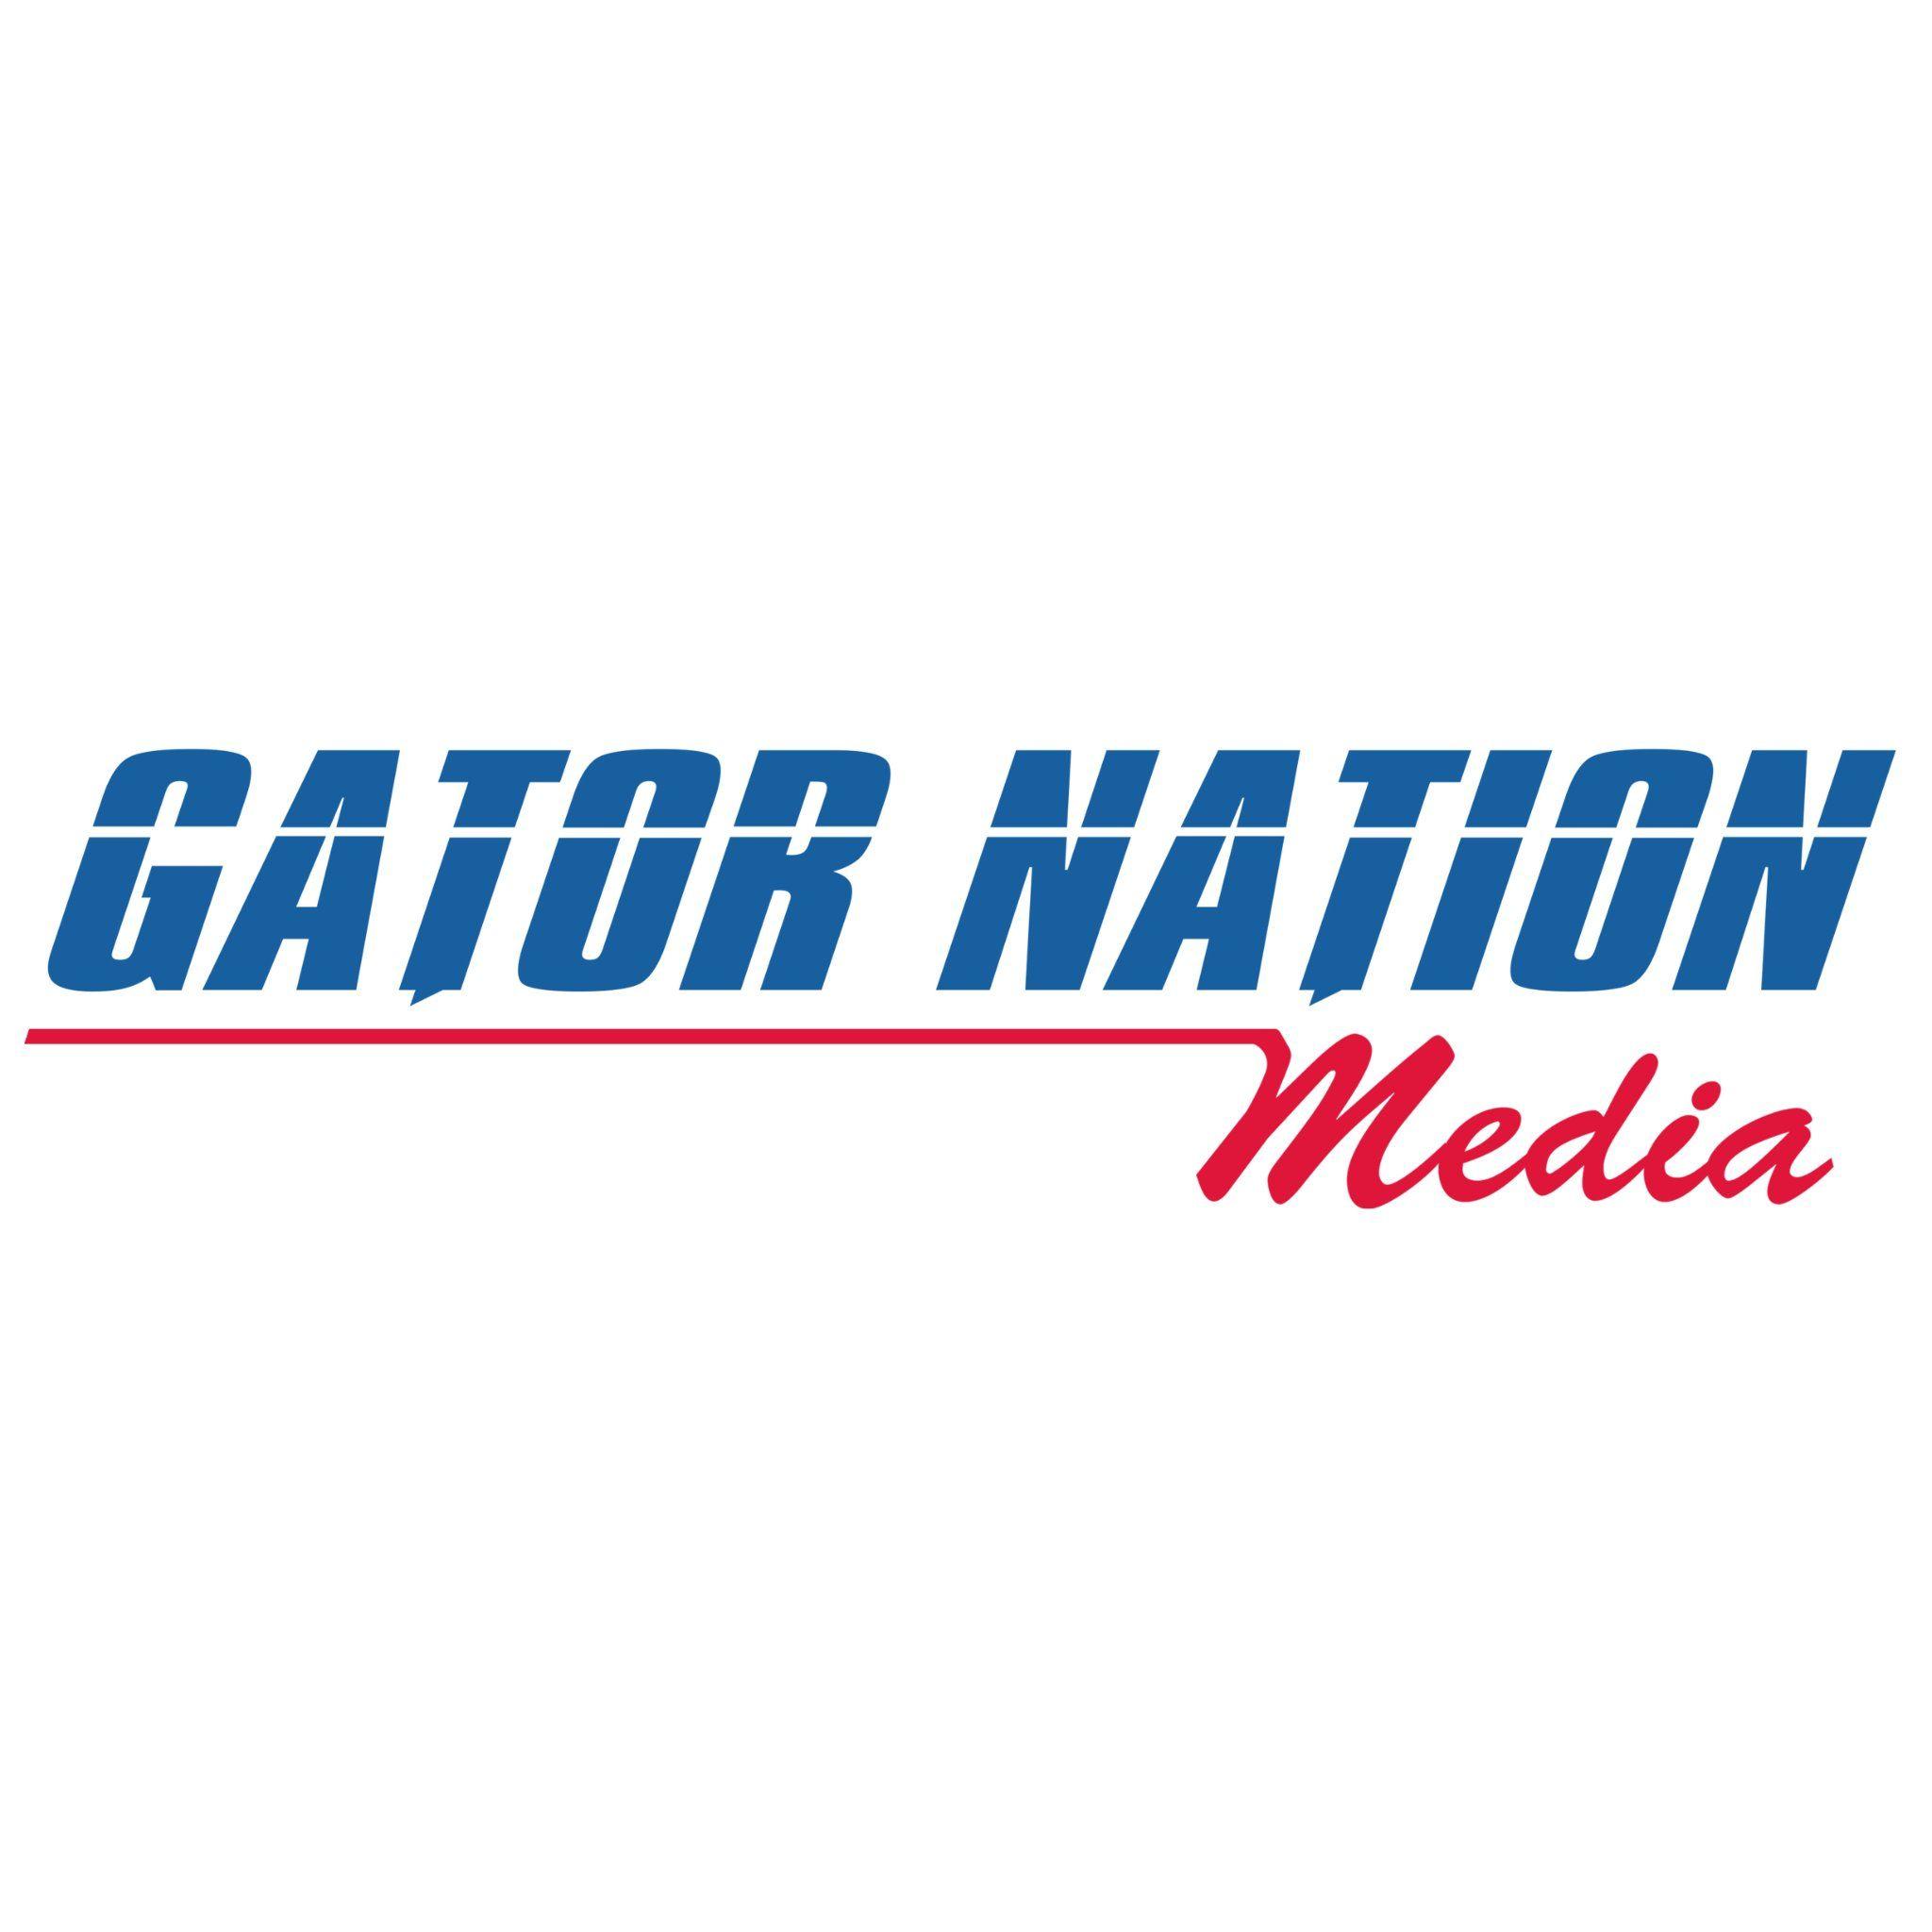 GatorNation Logo - Gator Nation Media (@GatorNationLive) | Twitter